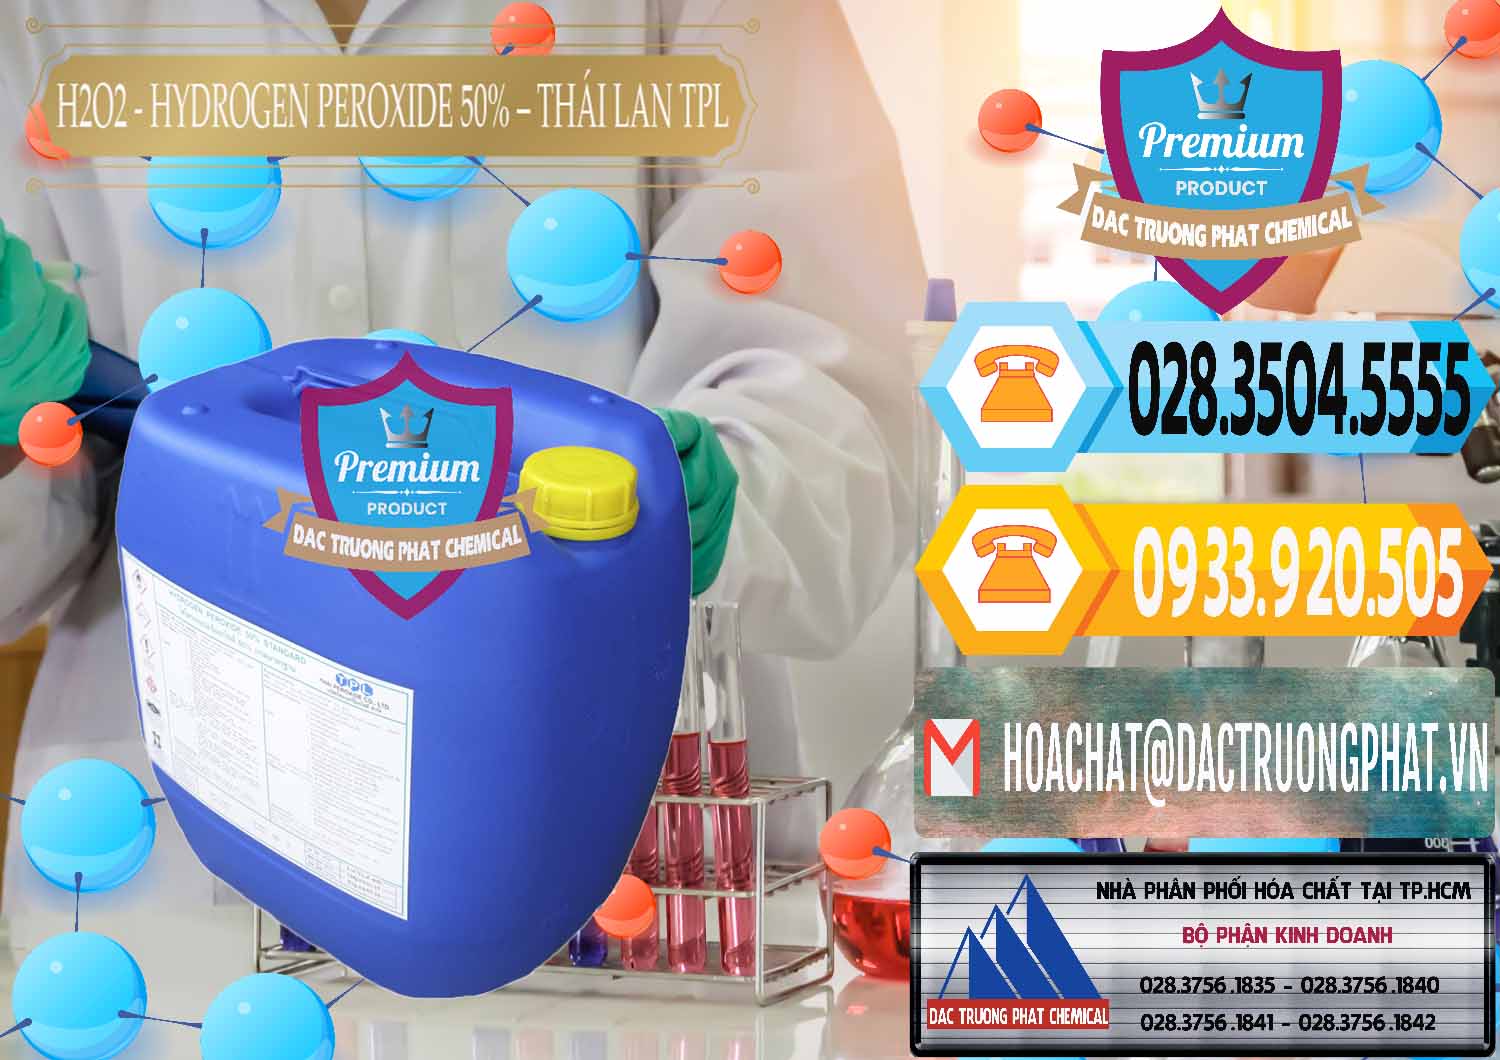 Nơi bán & phân phối H2O2 - Hydrogen Peroxide 50% Thái Lan TPL - 0076 - Nơi chuyên kinh doanh - phân phối hóa chất tại TP.HCM - hoachattayrua.net